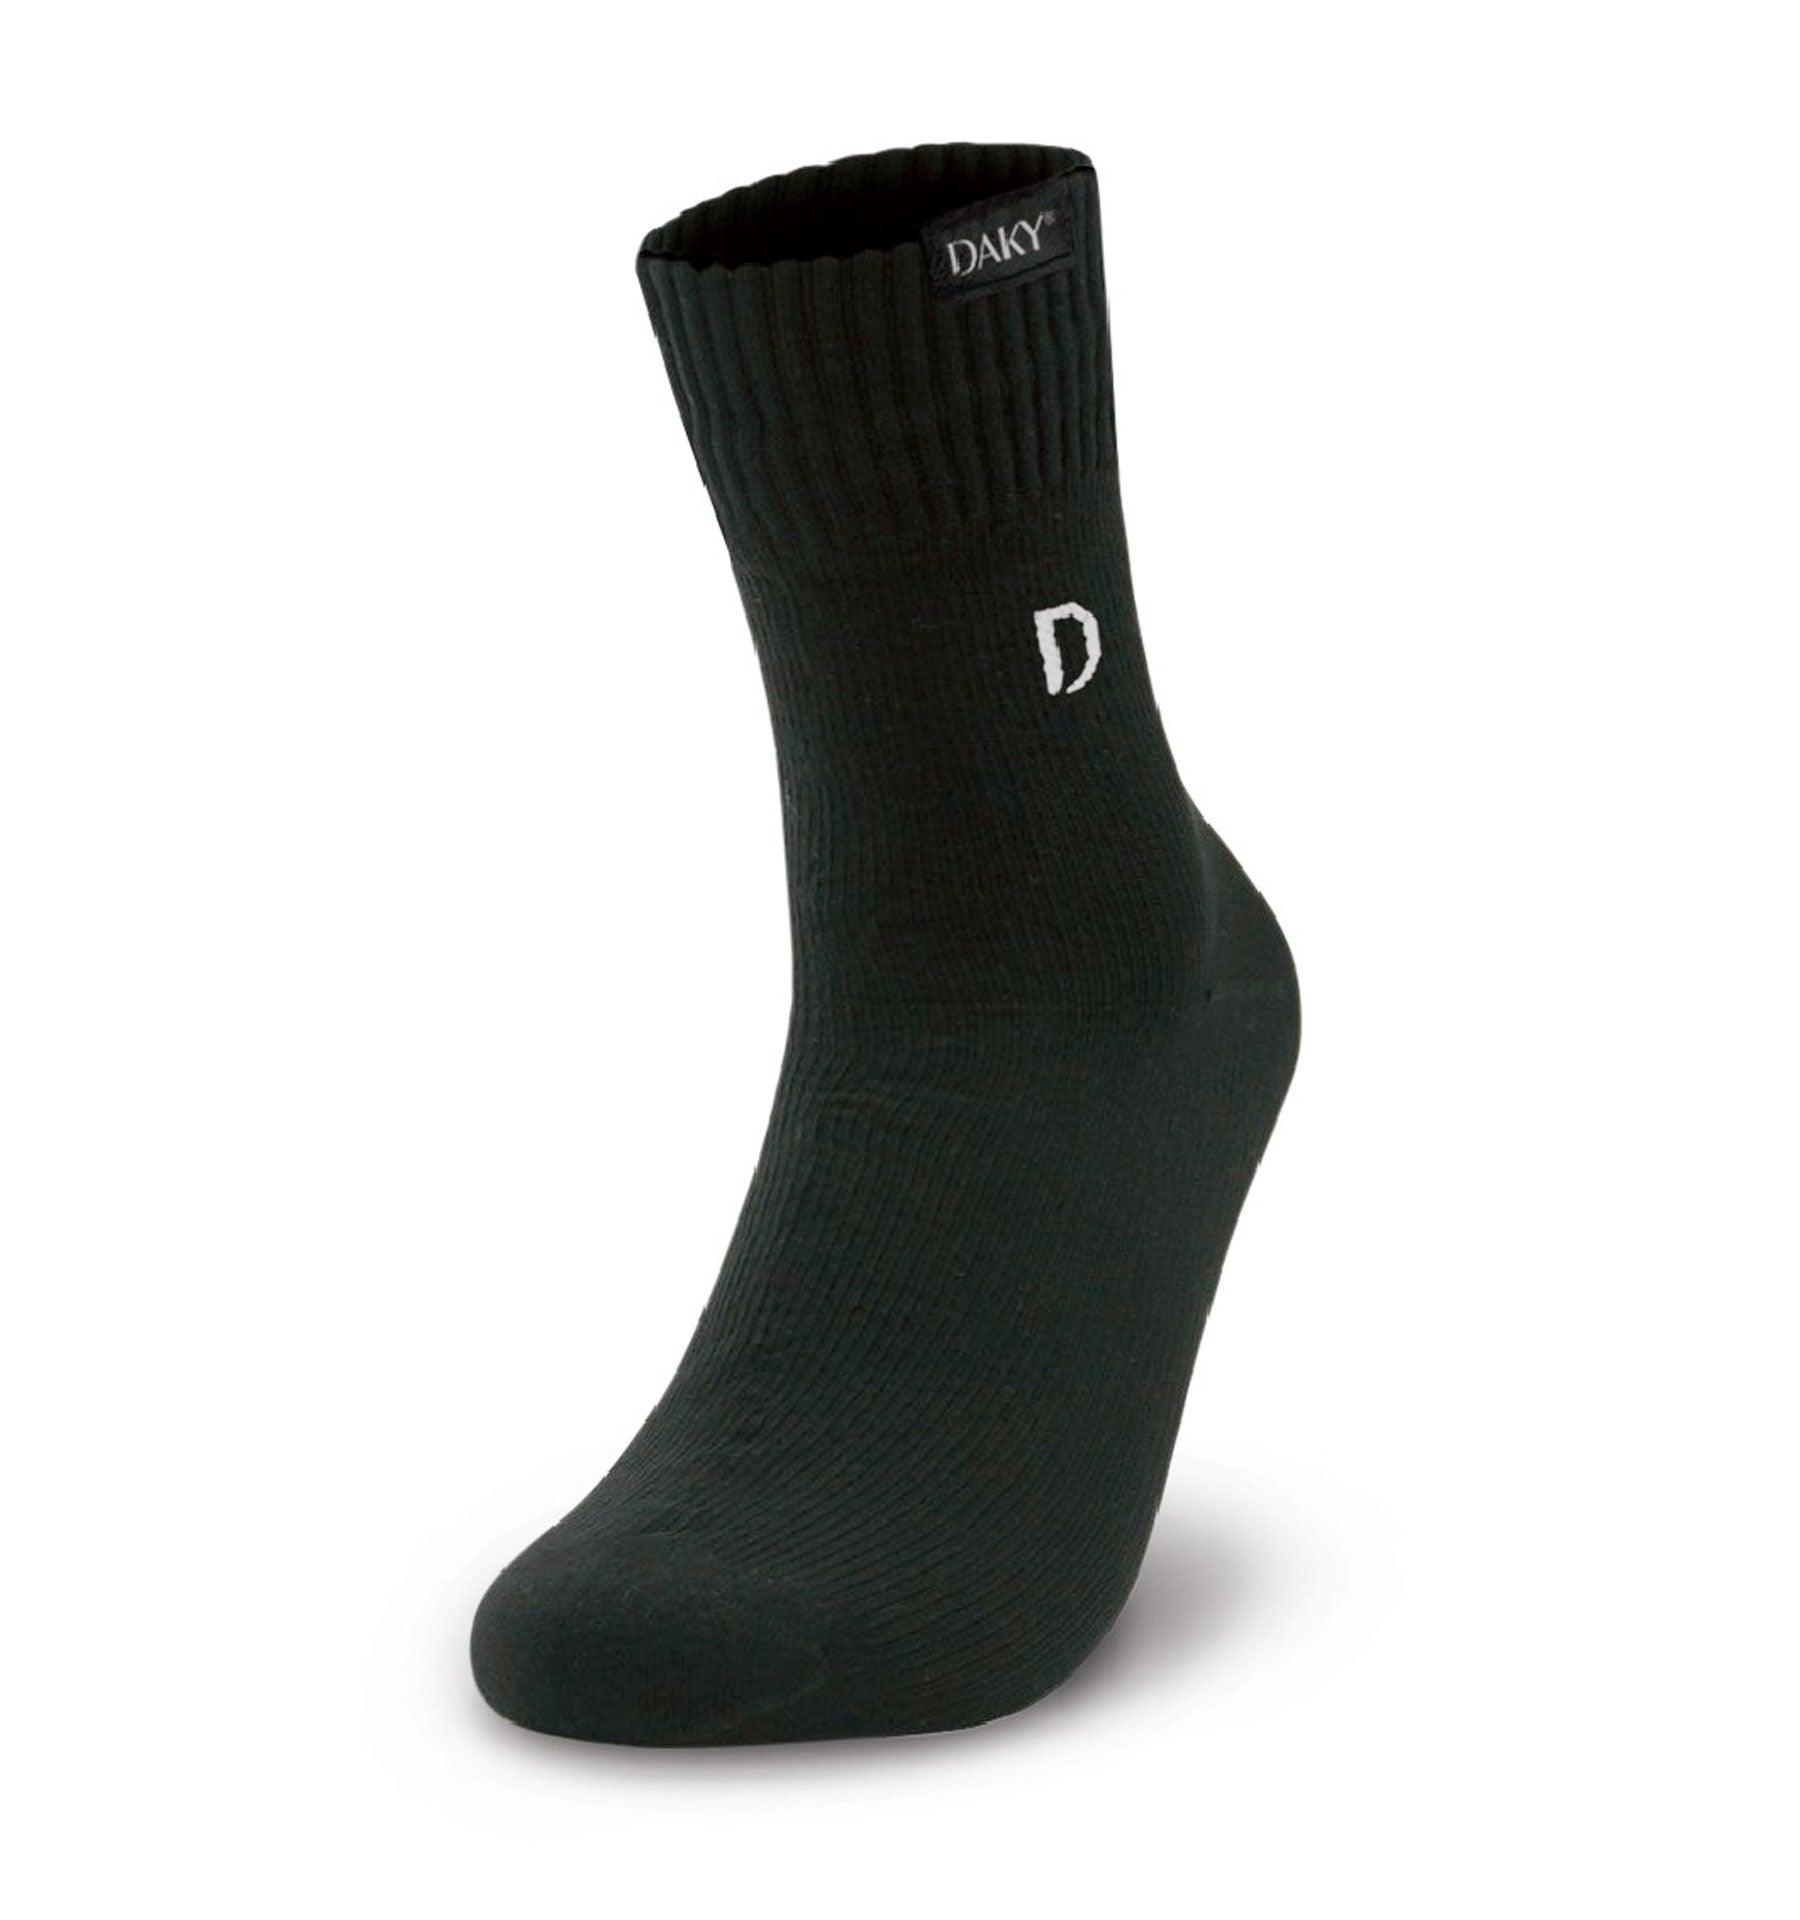 DAKY Waterproof Wudhu Socks (Mid-Calf) - Islamic Pixels